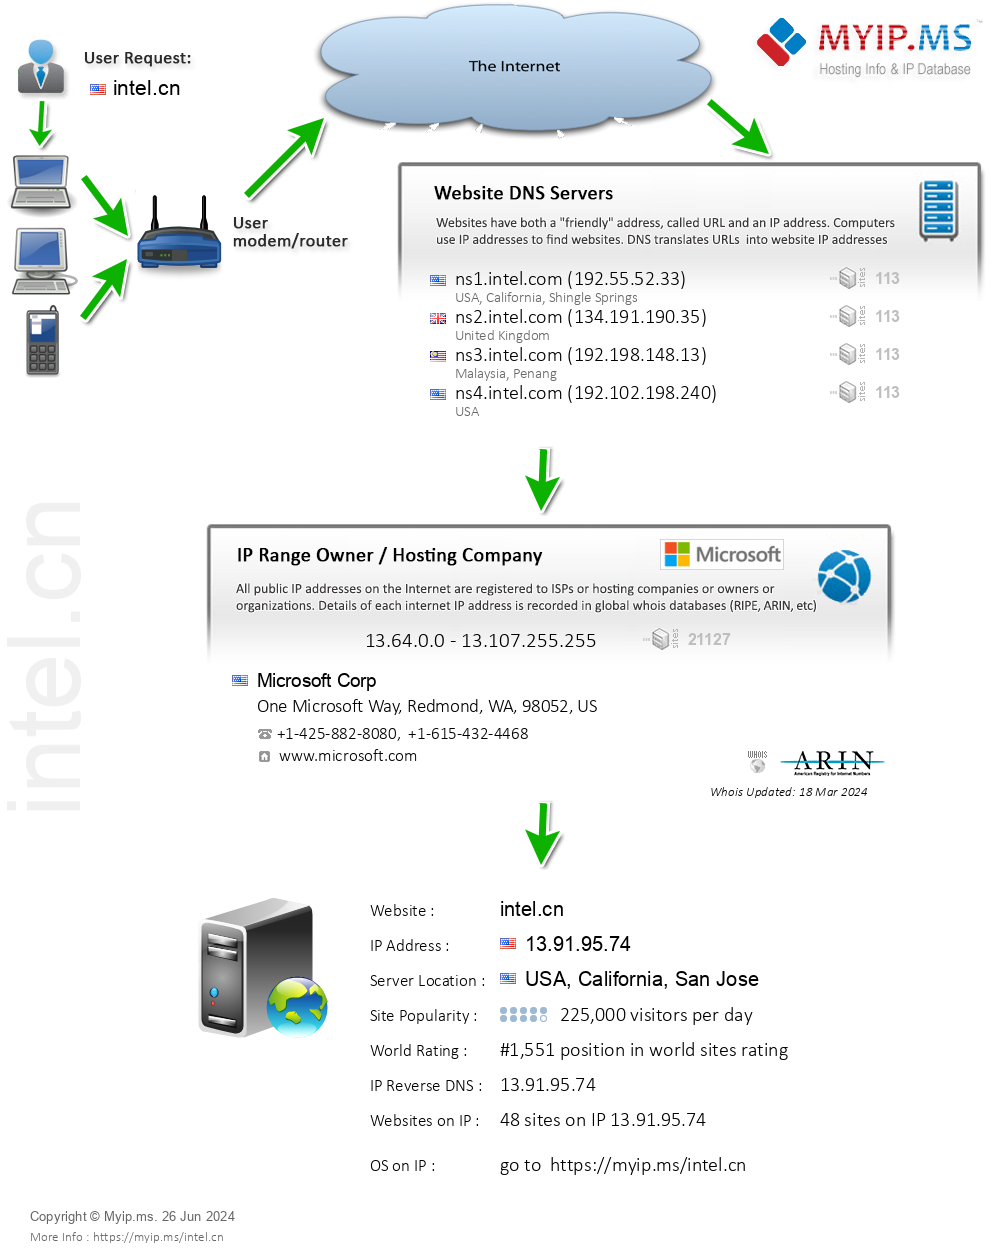 Intel.cn - Website Hosting Visual IP Diagram